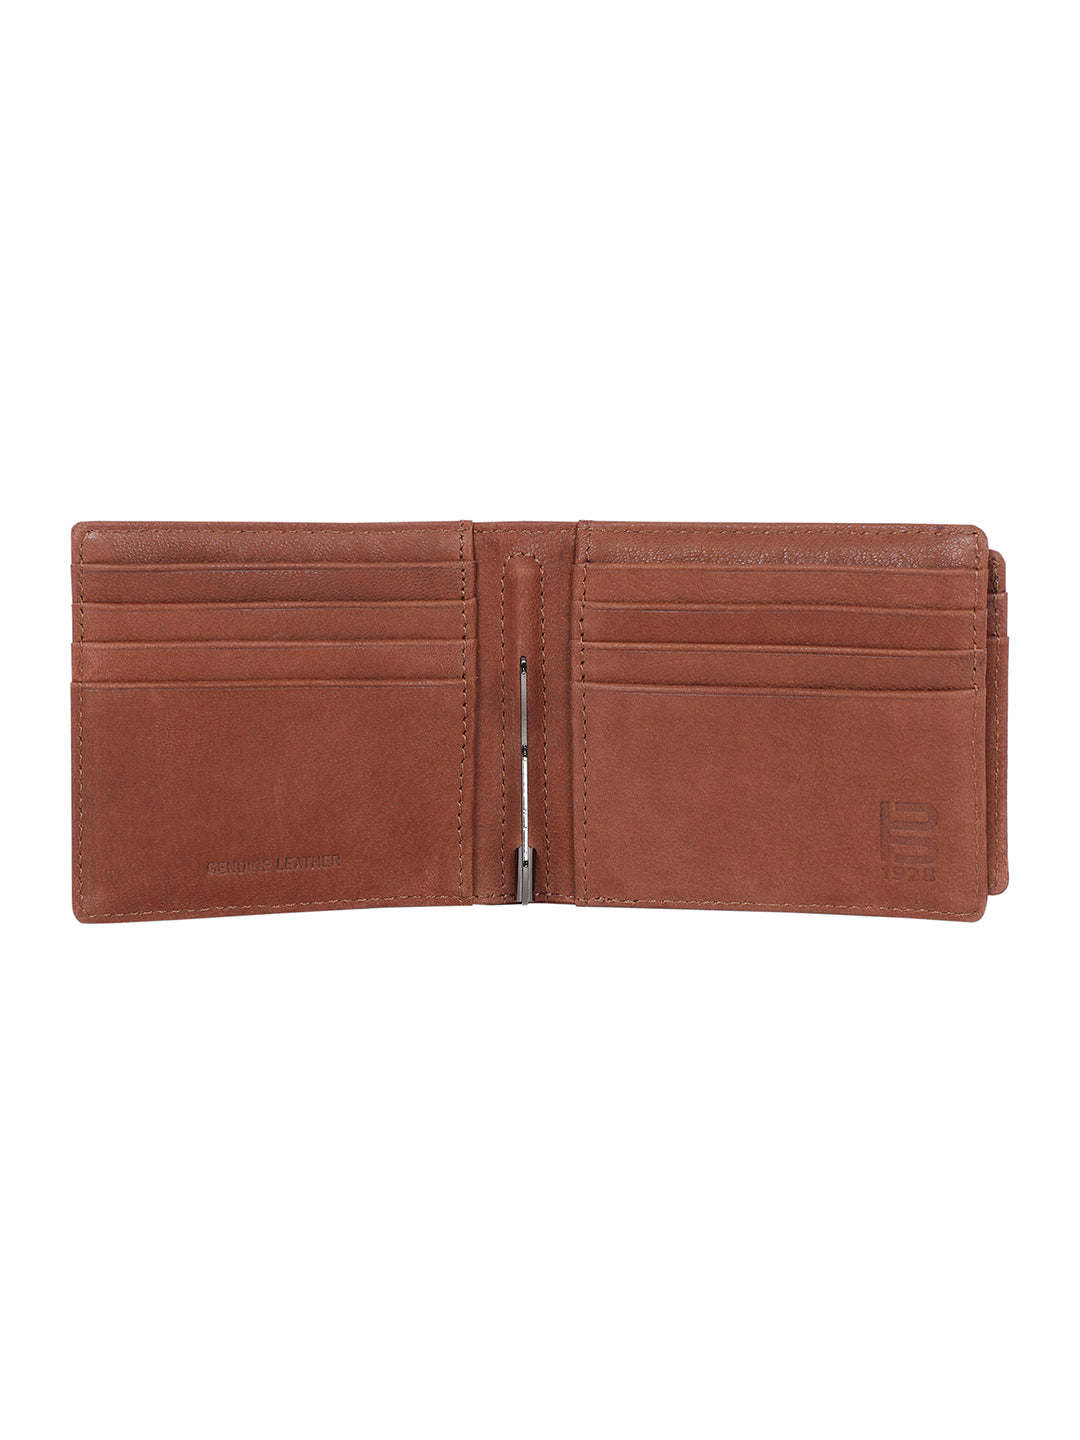 BAGATT Brown Leather Men's Wallet